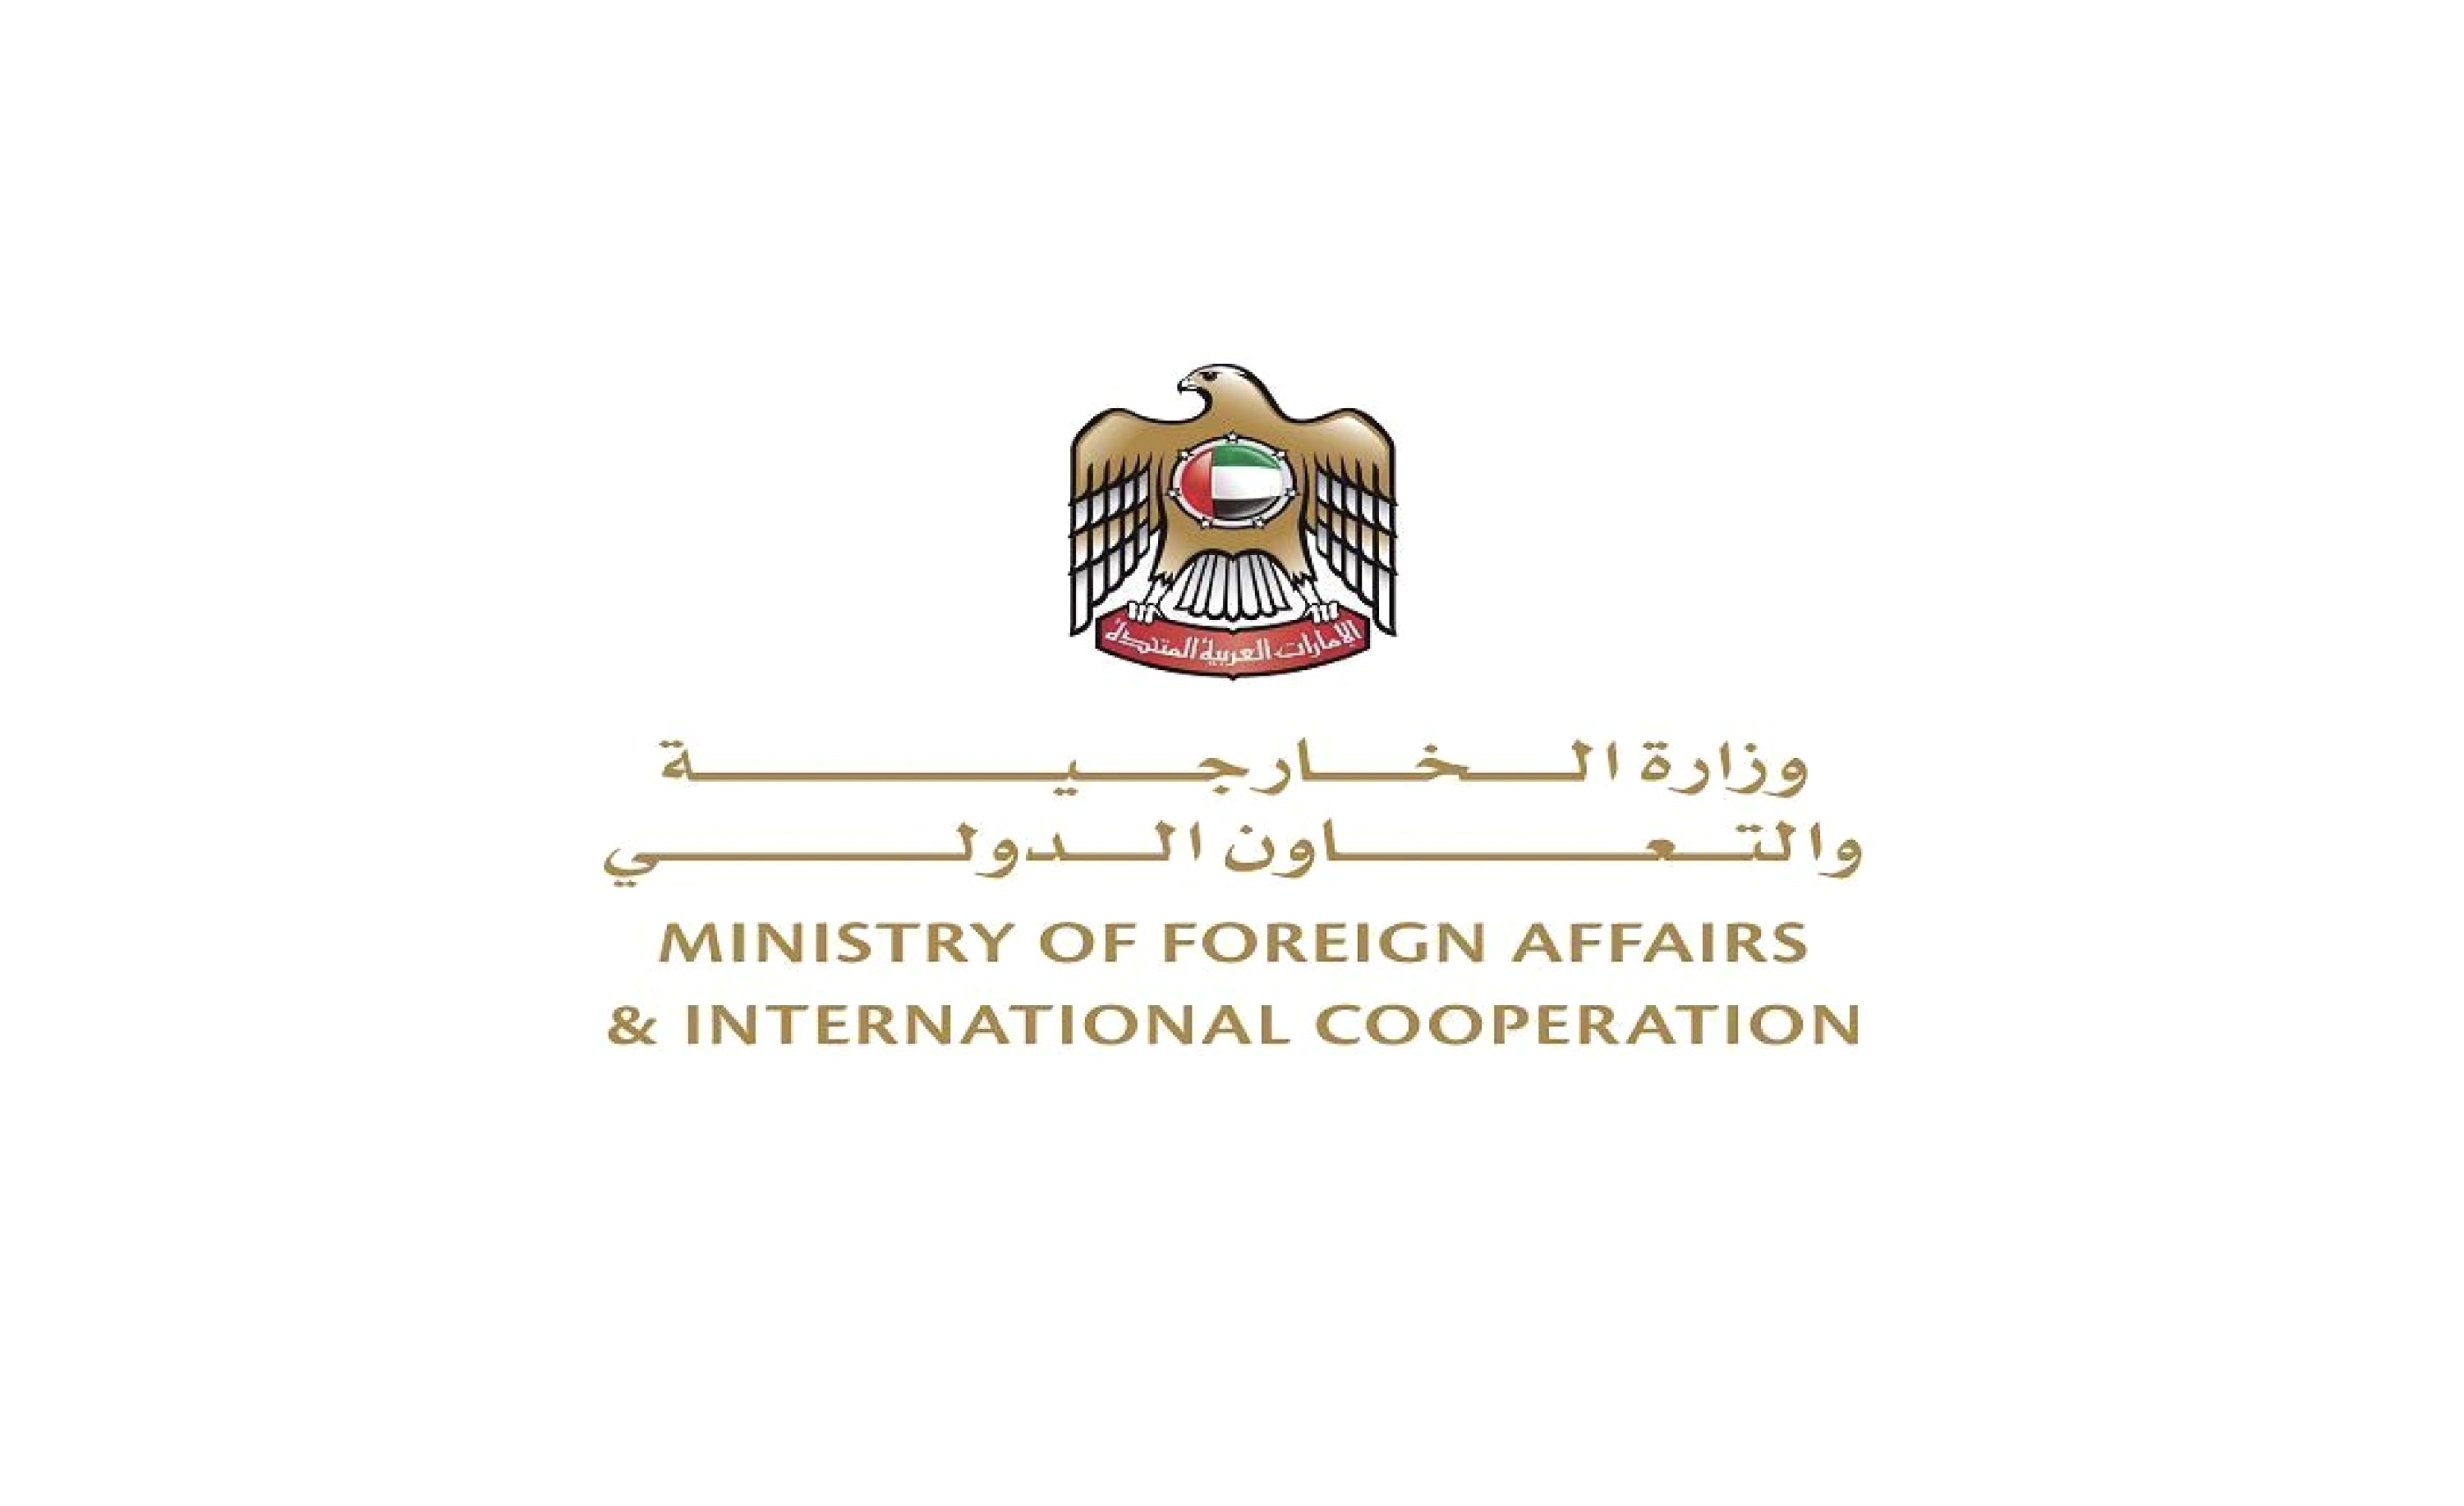 وزارة الخارجية والتعاون الدولي تعلن منع سفر المواطنين إلى الخارج مؤقتاً اعتباراً من اليوم